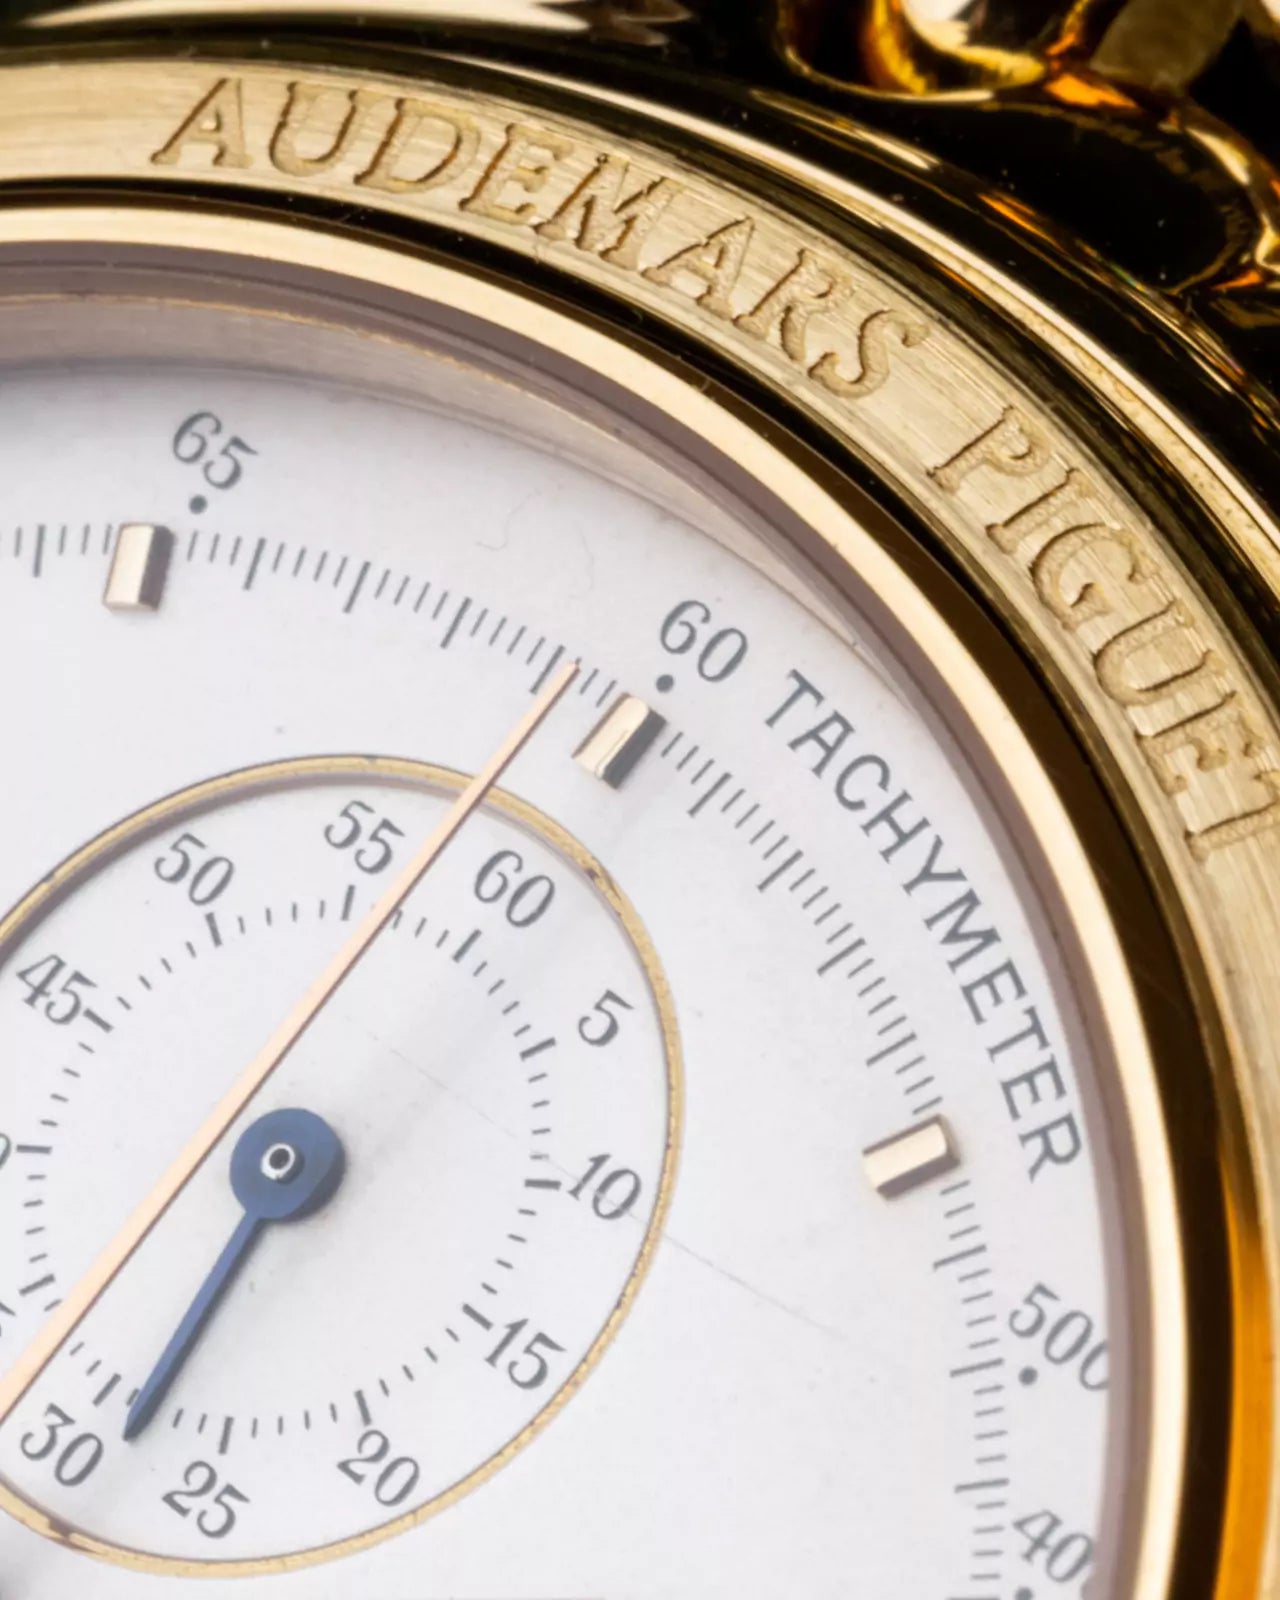 25645.0.760 Chronograph Audemars Piguet Watch